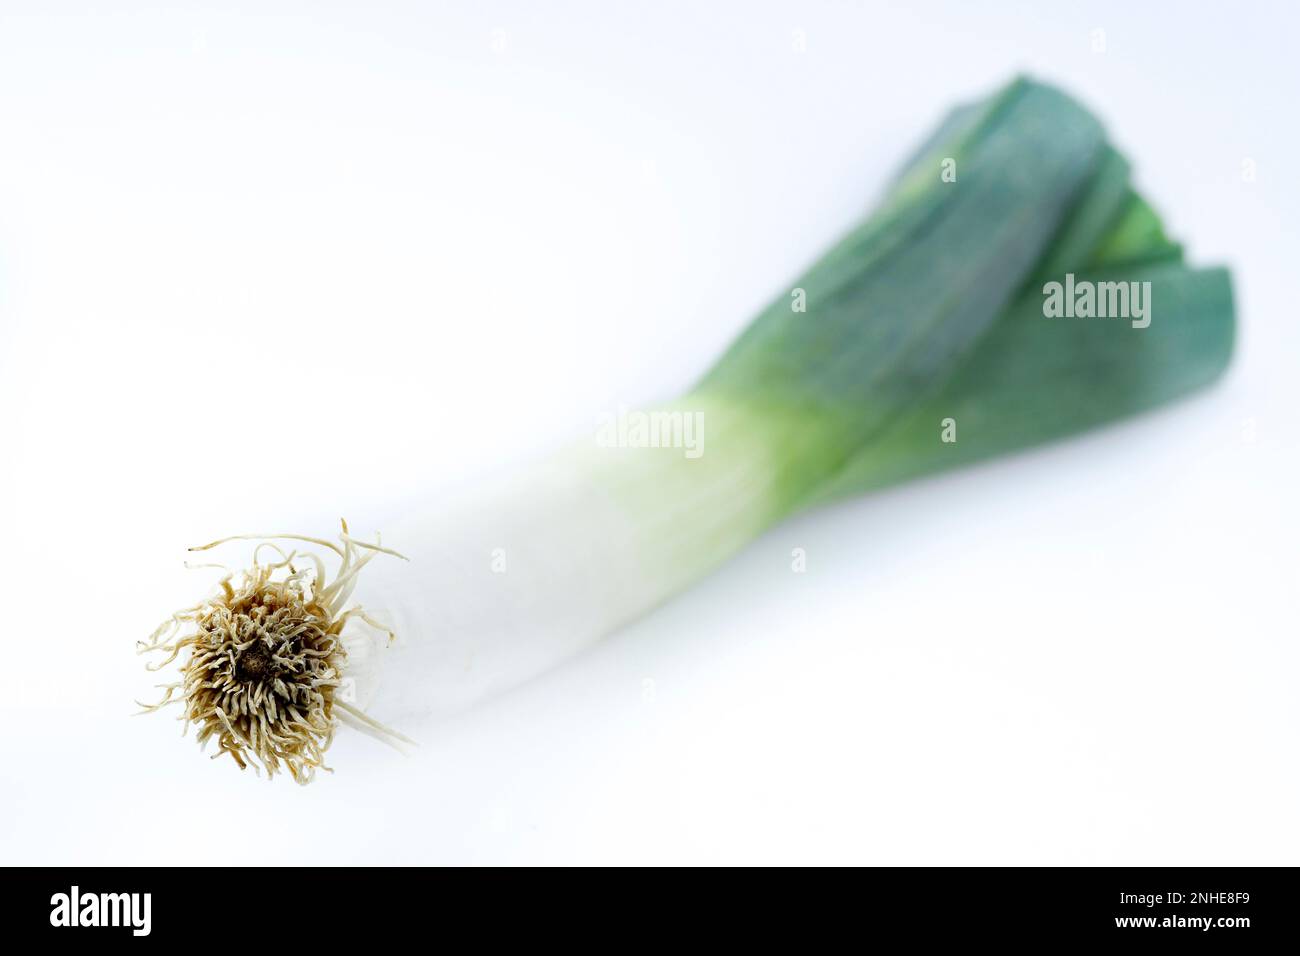 Leek (Allium porrum) Stock Photo